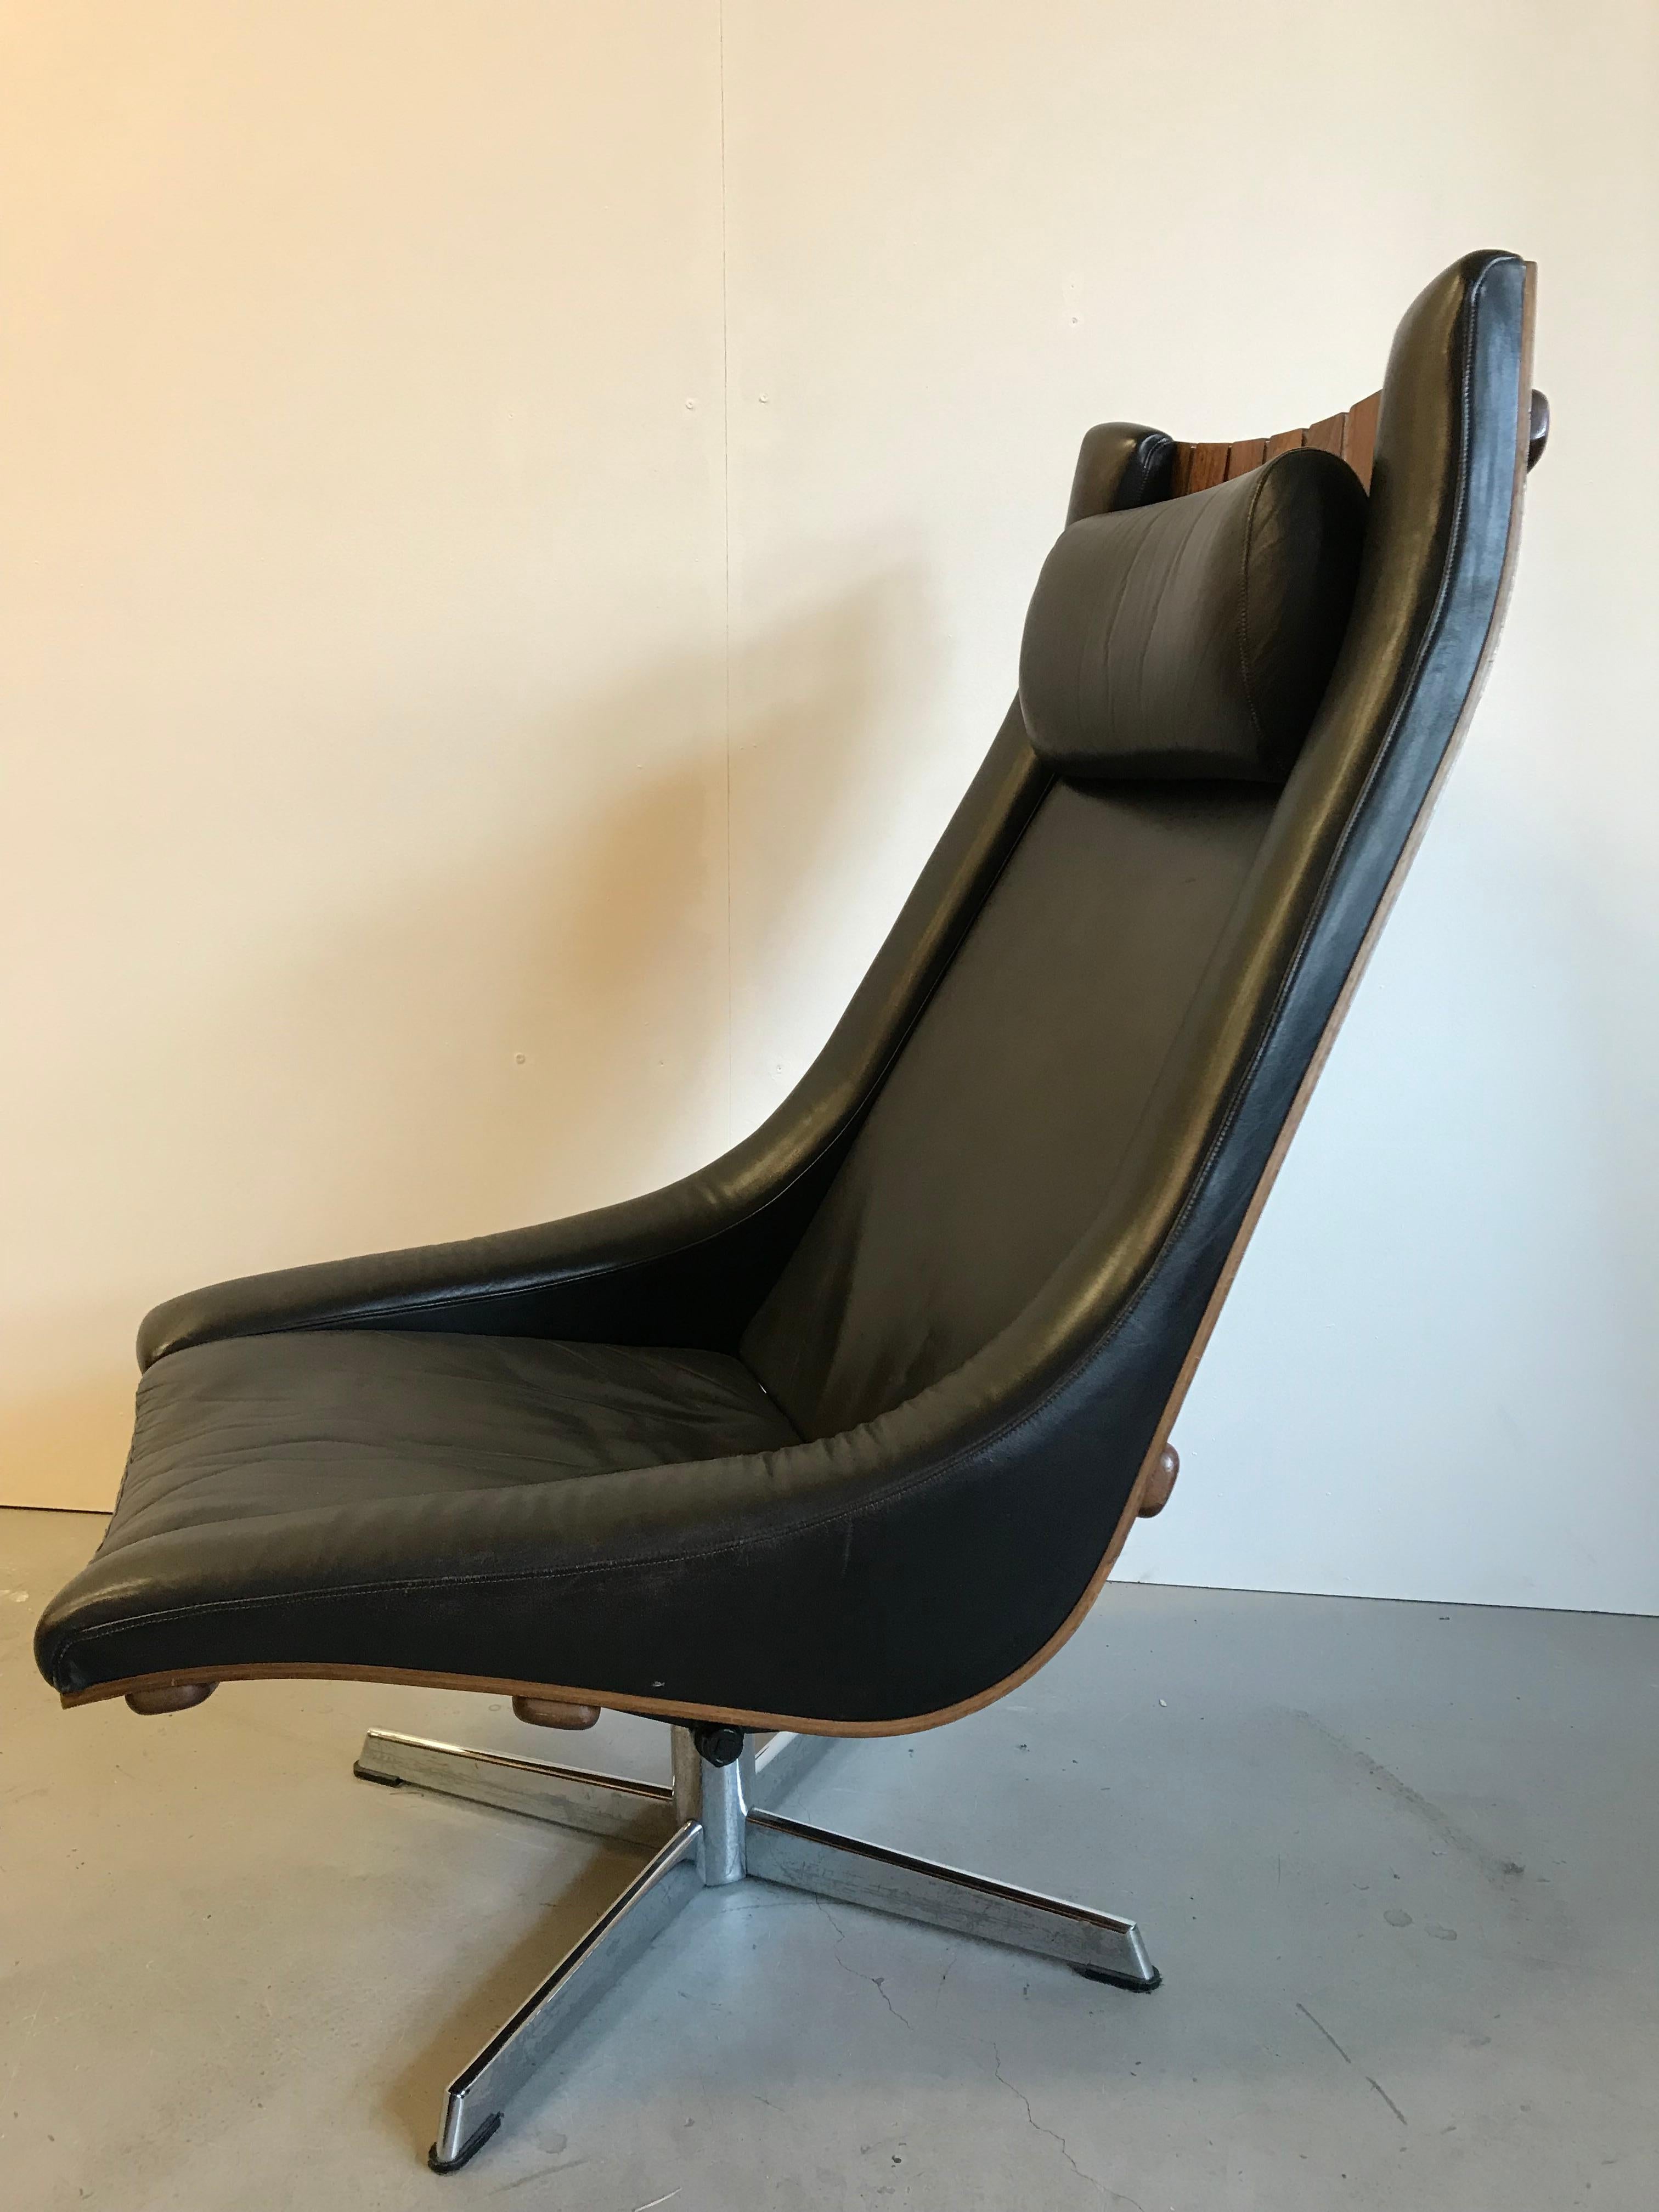 Besonderer Sessel von Hans Brattrud. Entworfen in den 1960er Jahren.
Dieser Scandia-Stuhl für Hove Mobler ist aus Palisanderholz gefertigt. Er hat einen verchromten Drehfuß und kann aufgrund seiner Lederpolsterung als exklusiv bezeichnet werden.